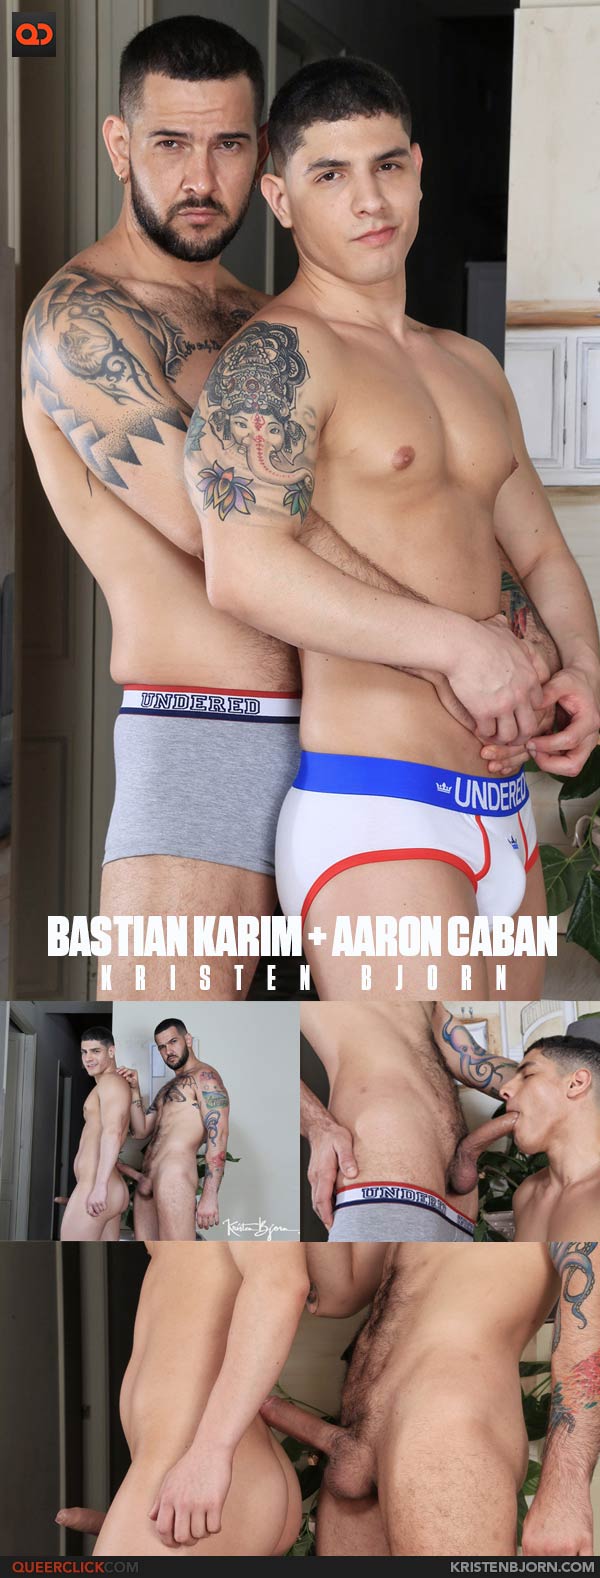 Kristen Bjorn: Bastian Karim and Aaron Caban